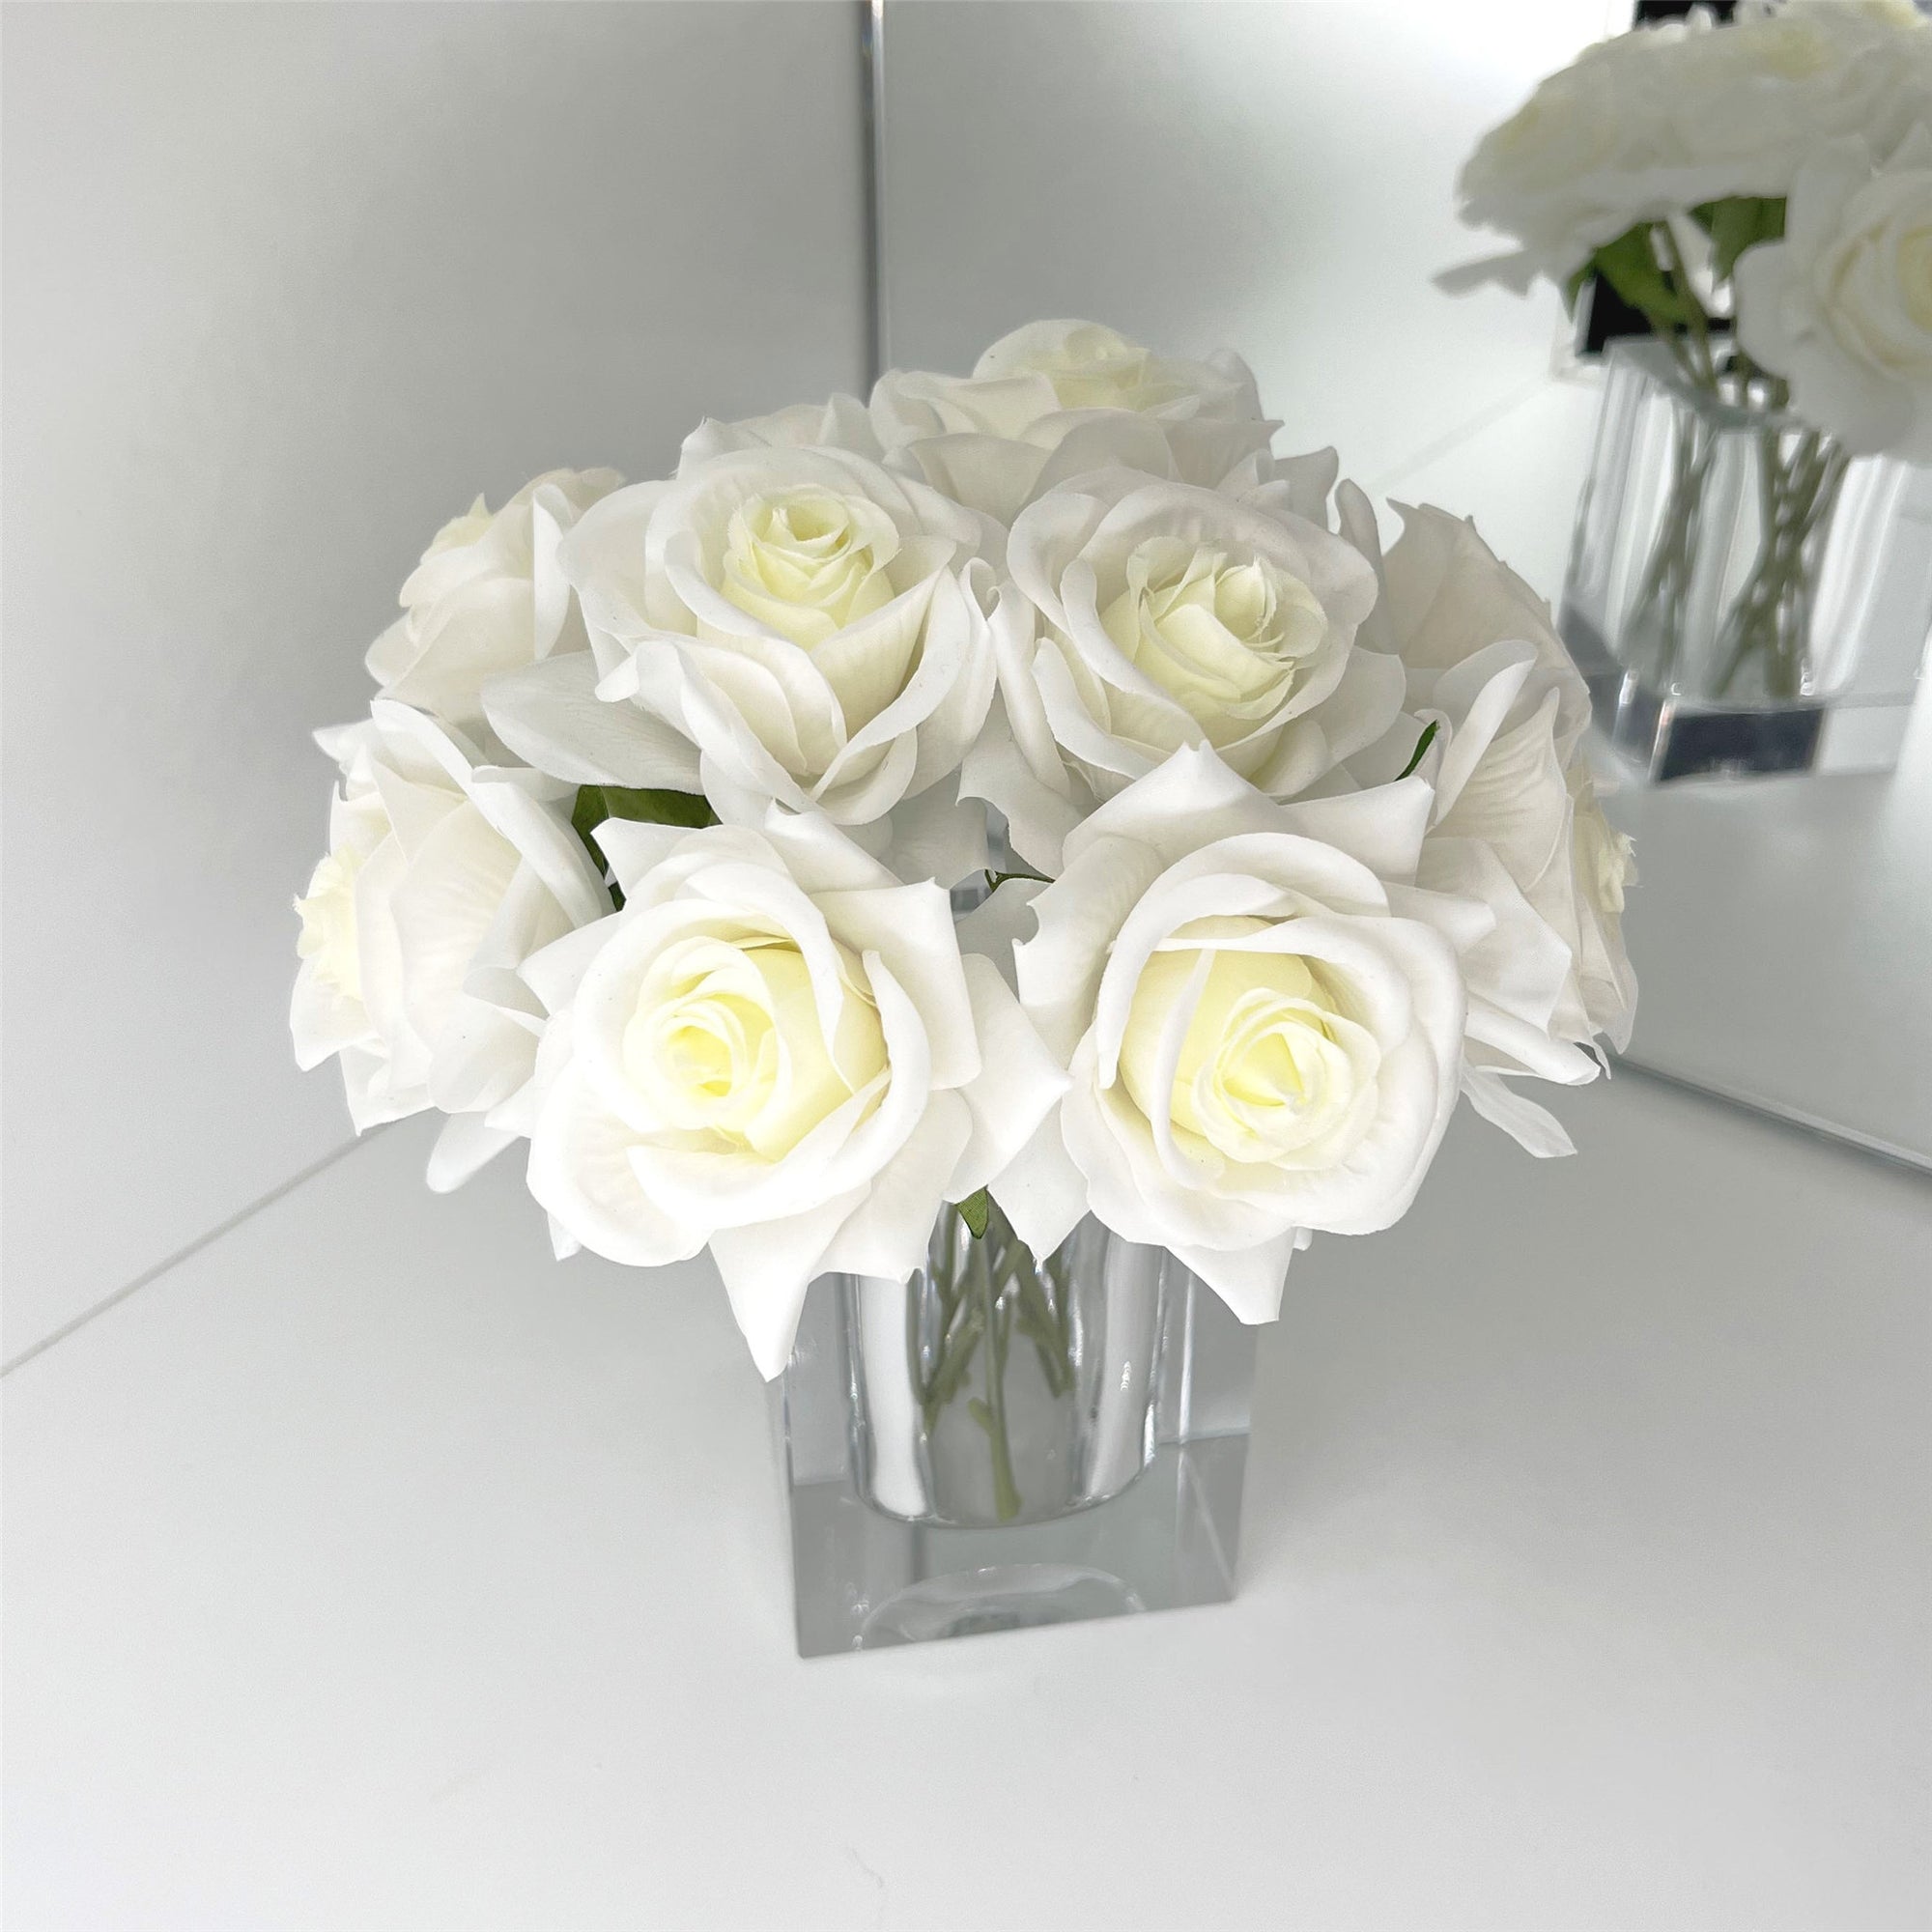 Faux Floral Arrangement Ivory Roses